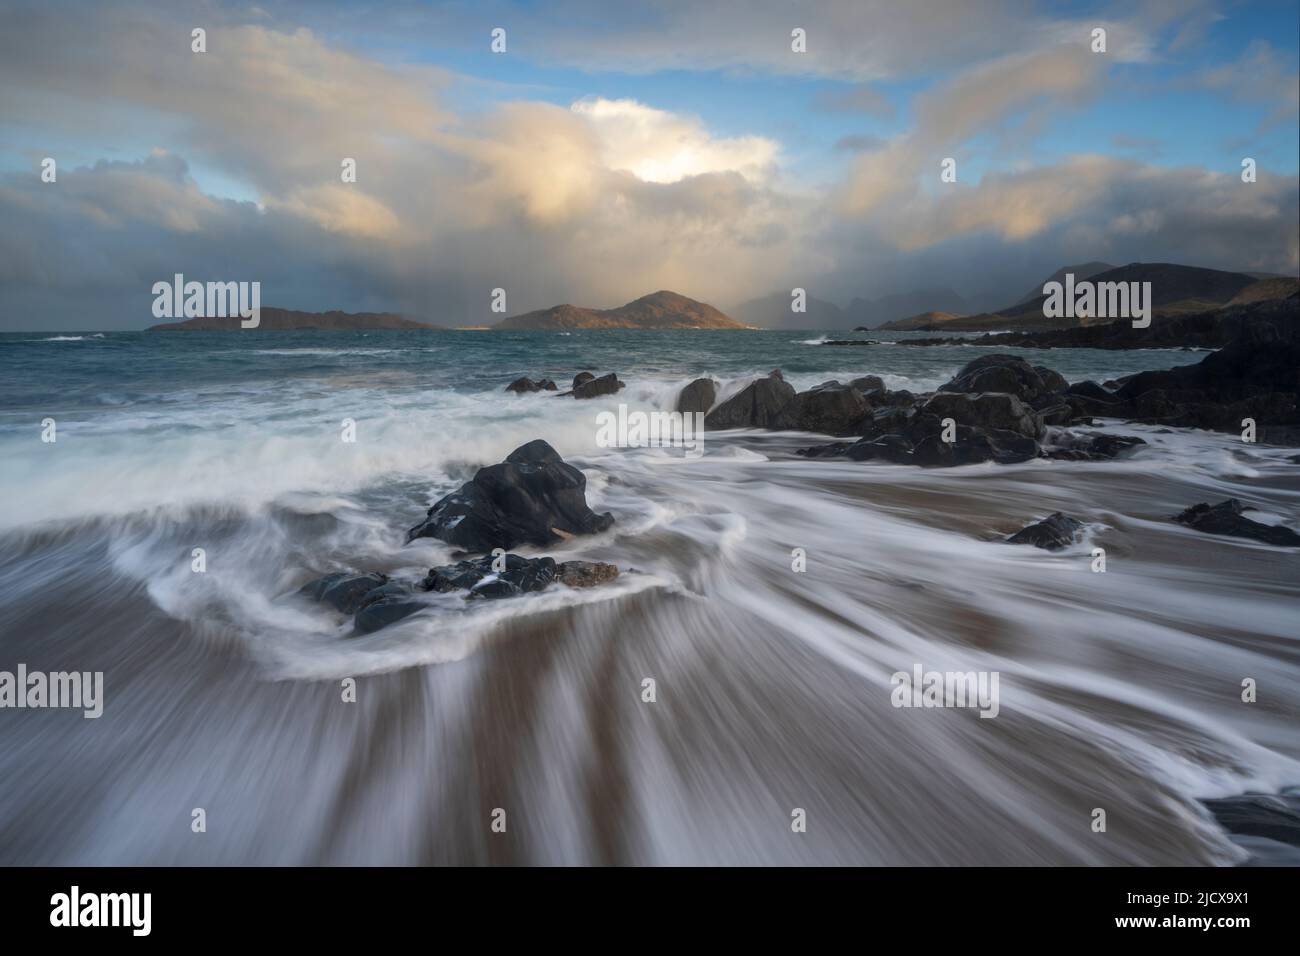 Onde rotolanti a lunga esposizione a Traigh Bheag, Isola di Harris, Ebridi esterne, Scozia, Regno Unito, Europa Foto Stock